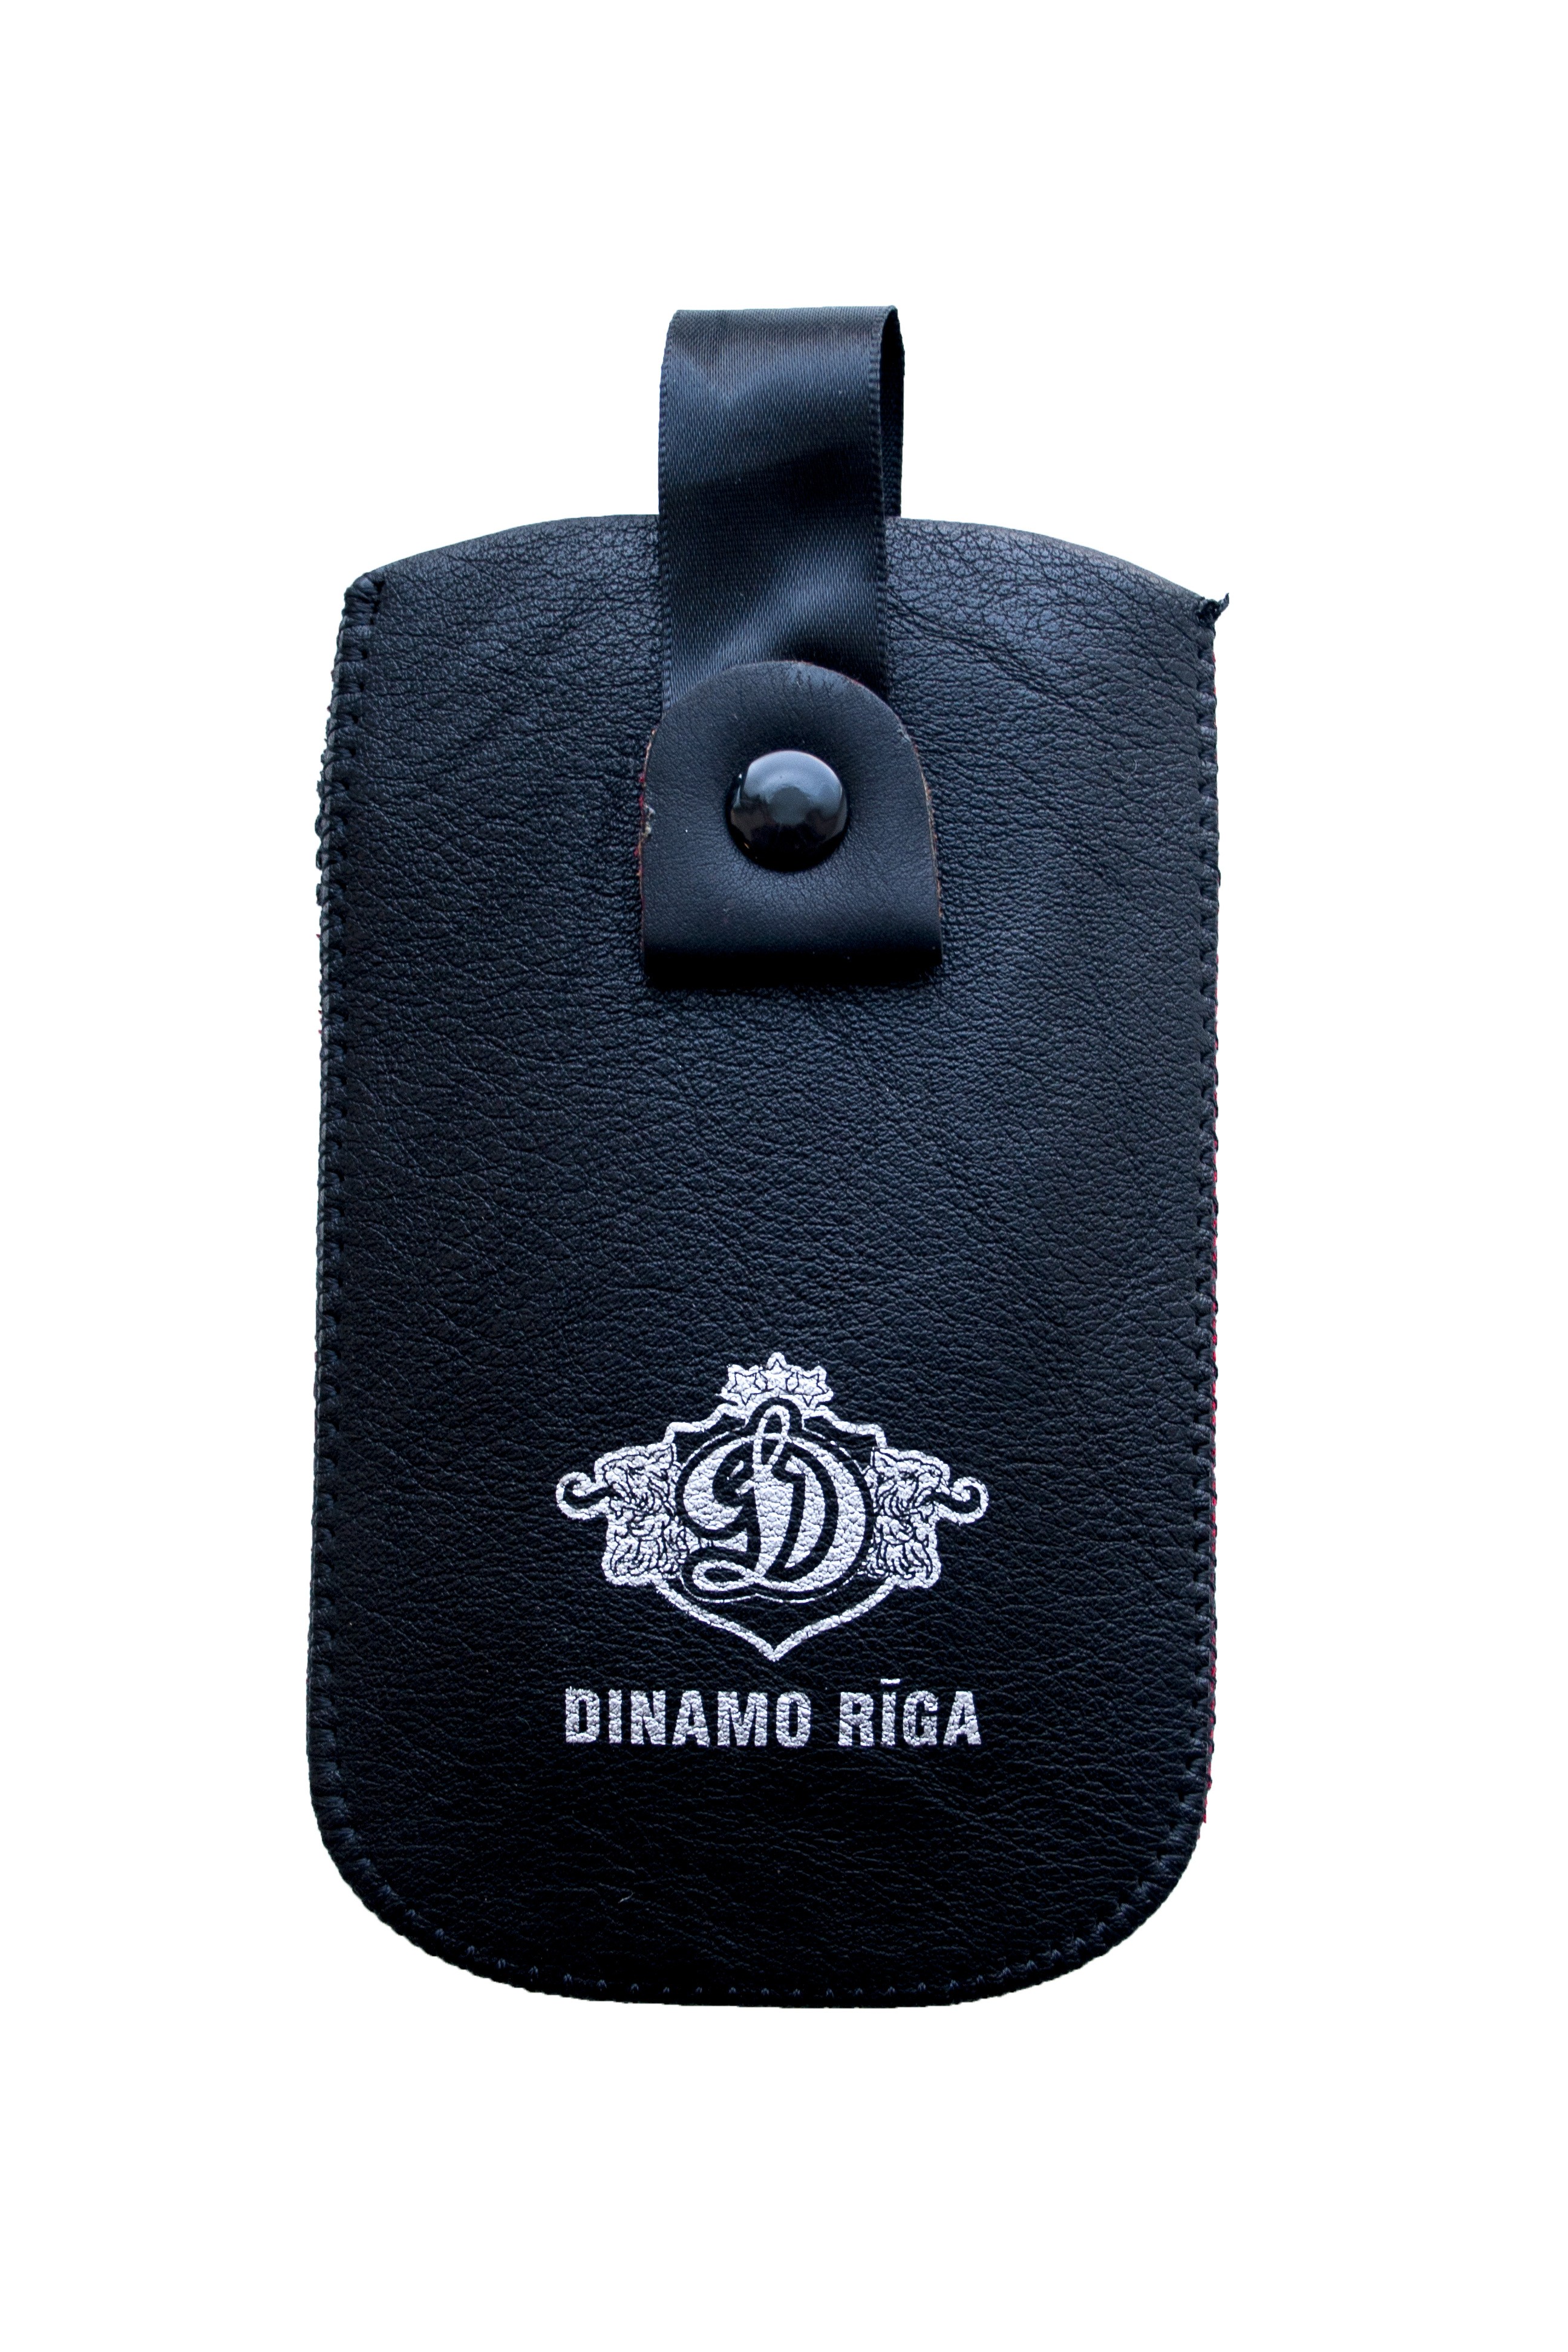 Dinamo Riga Phone Wallet